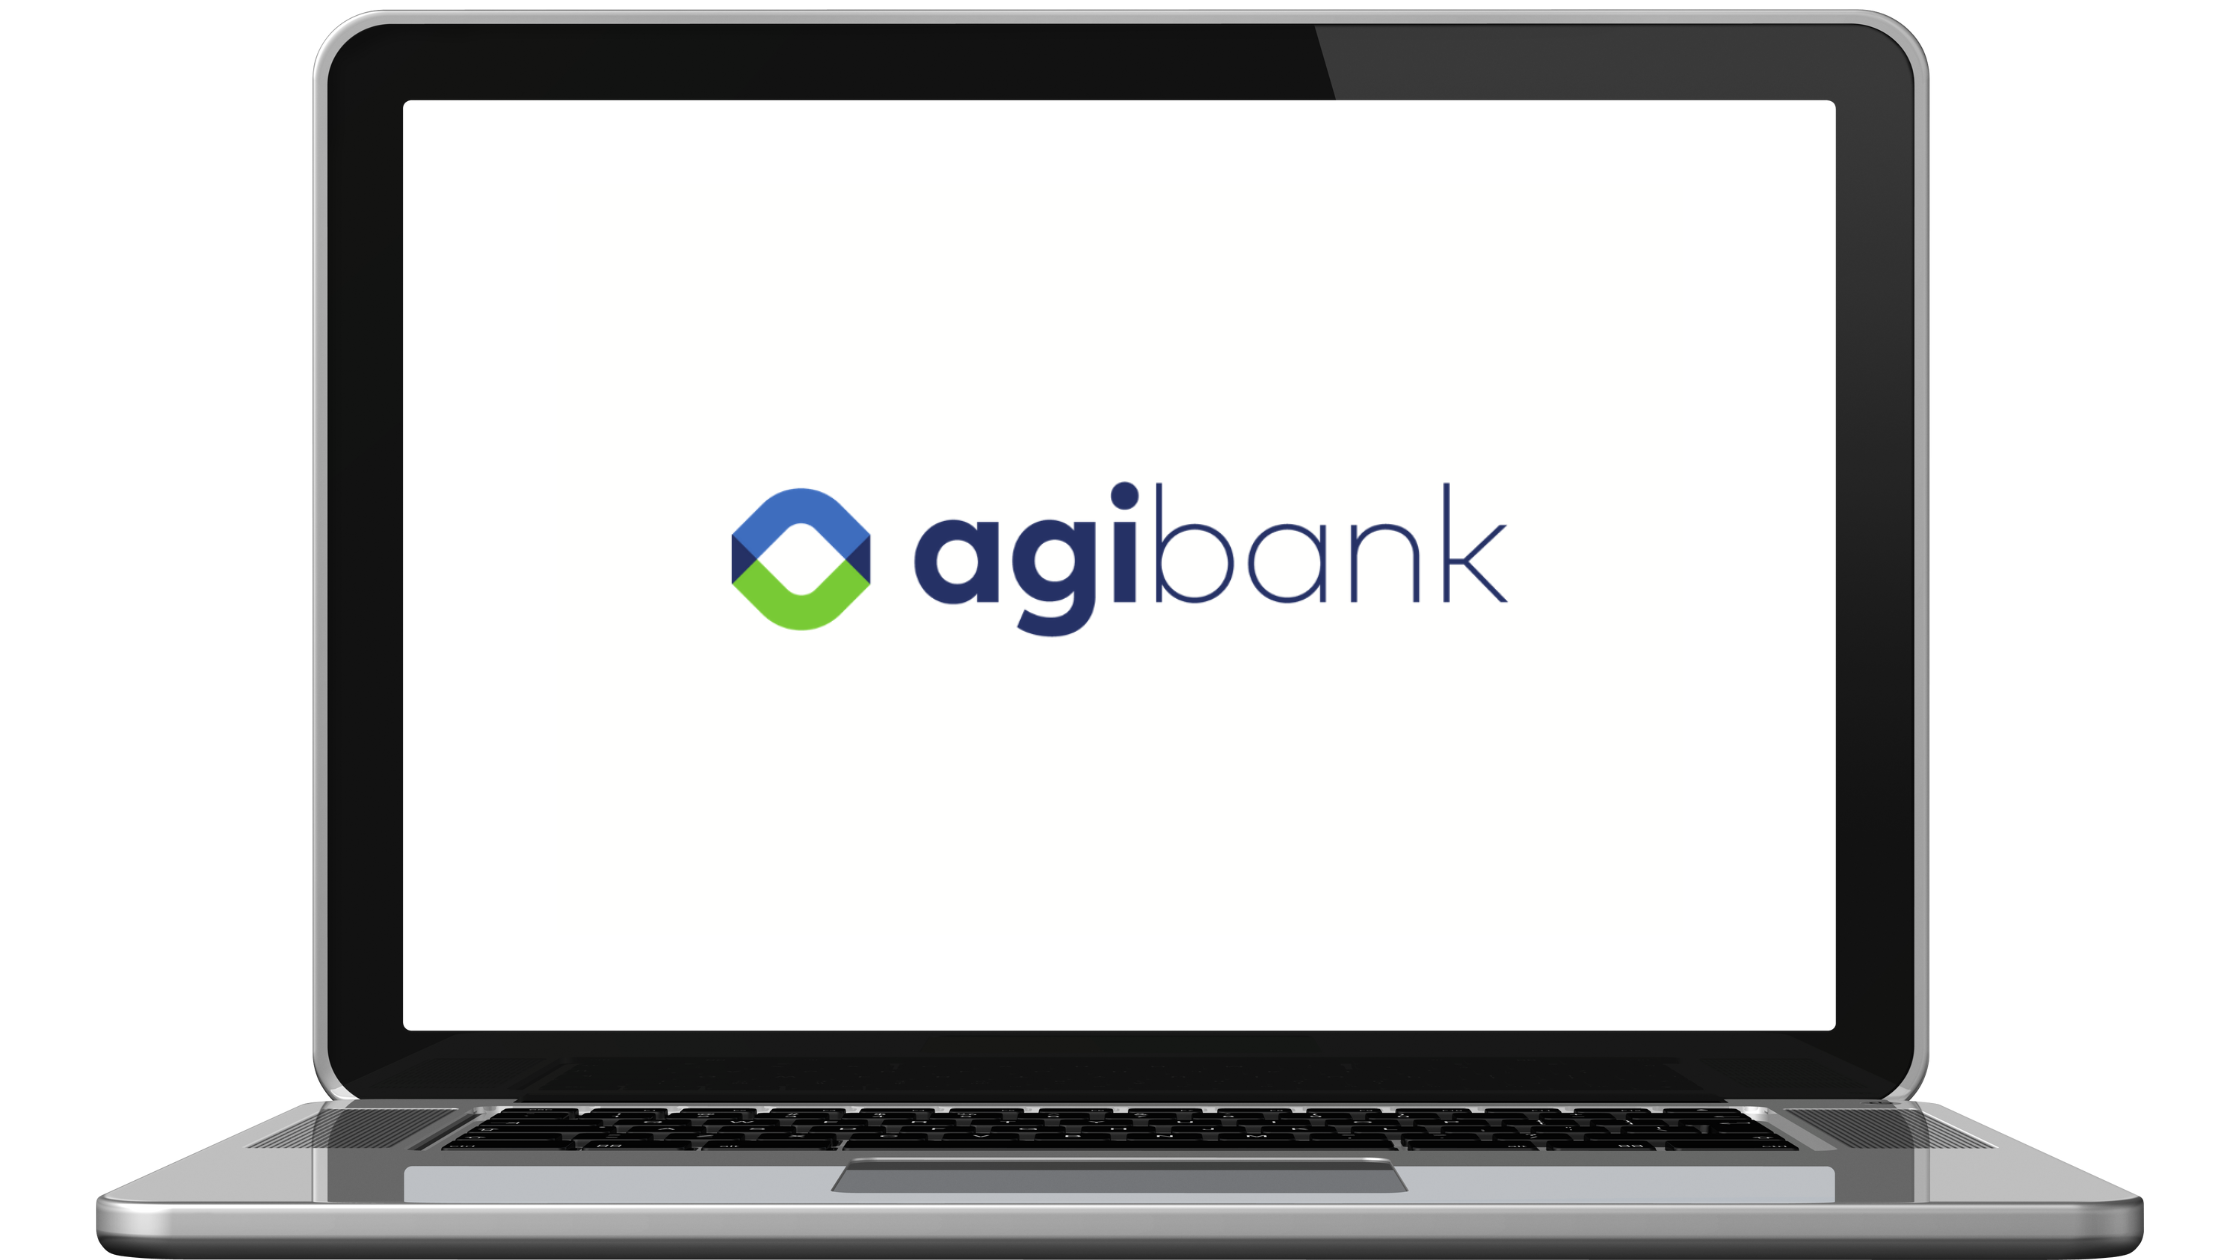 Laptop moderno com código do banco Agibank